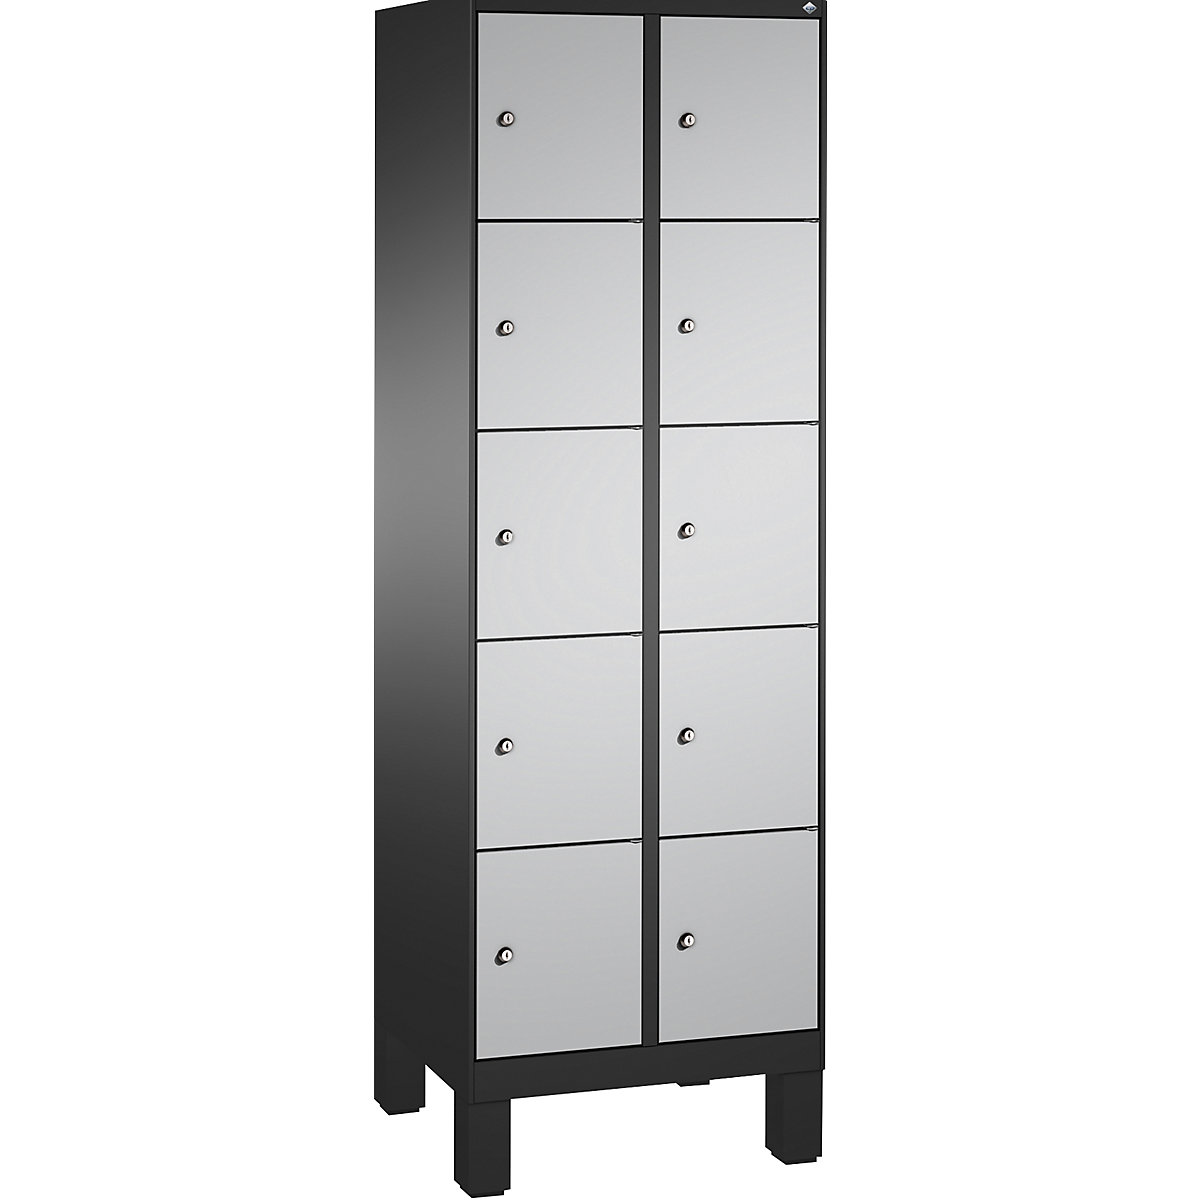 Armoire à casiers sur pieds EVOLO – C+P, 2 compartiments, 5 casiers chacun, largeur compartiments 300 mm, gris noir / aluminium-8